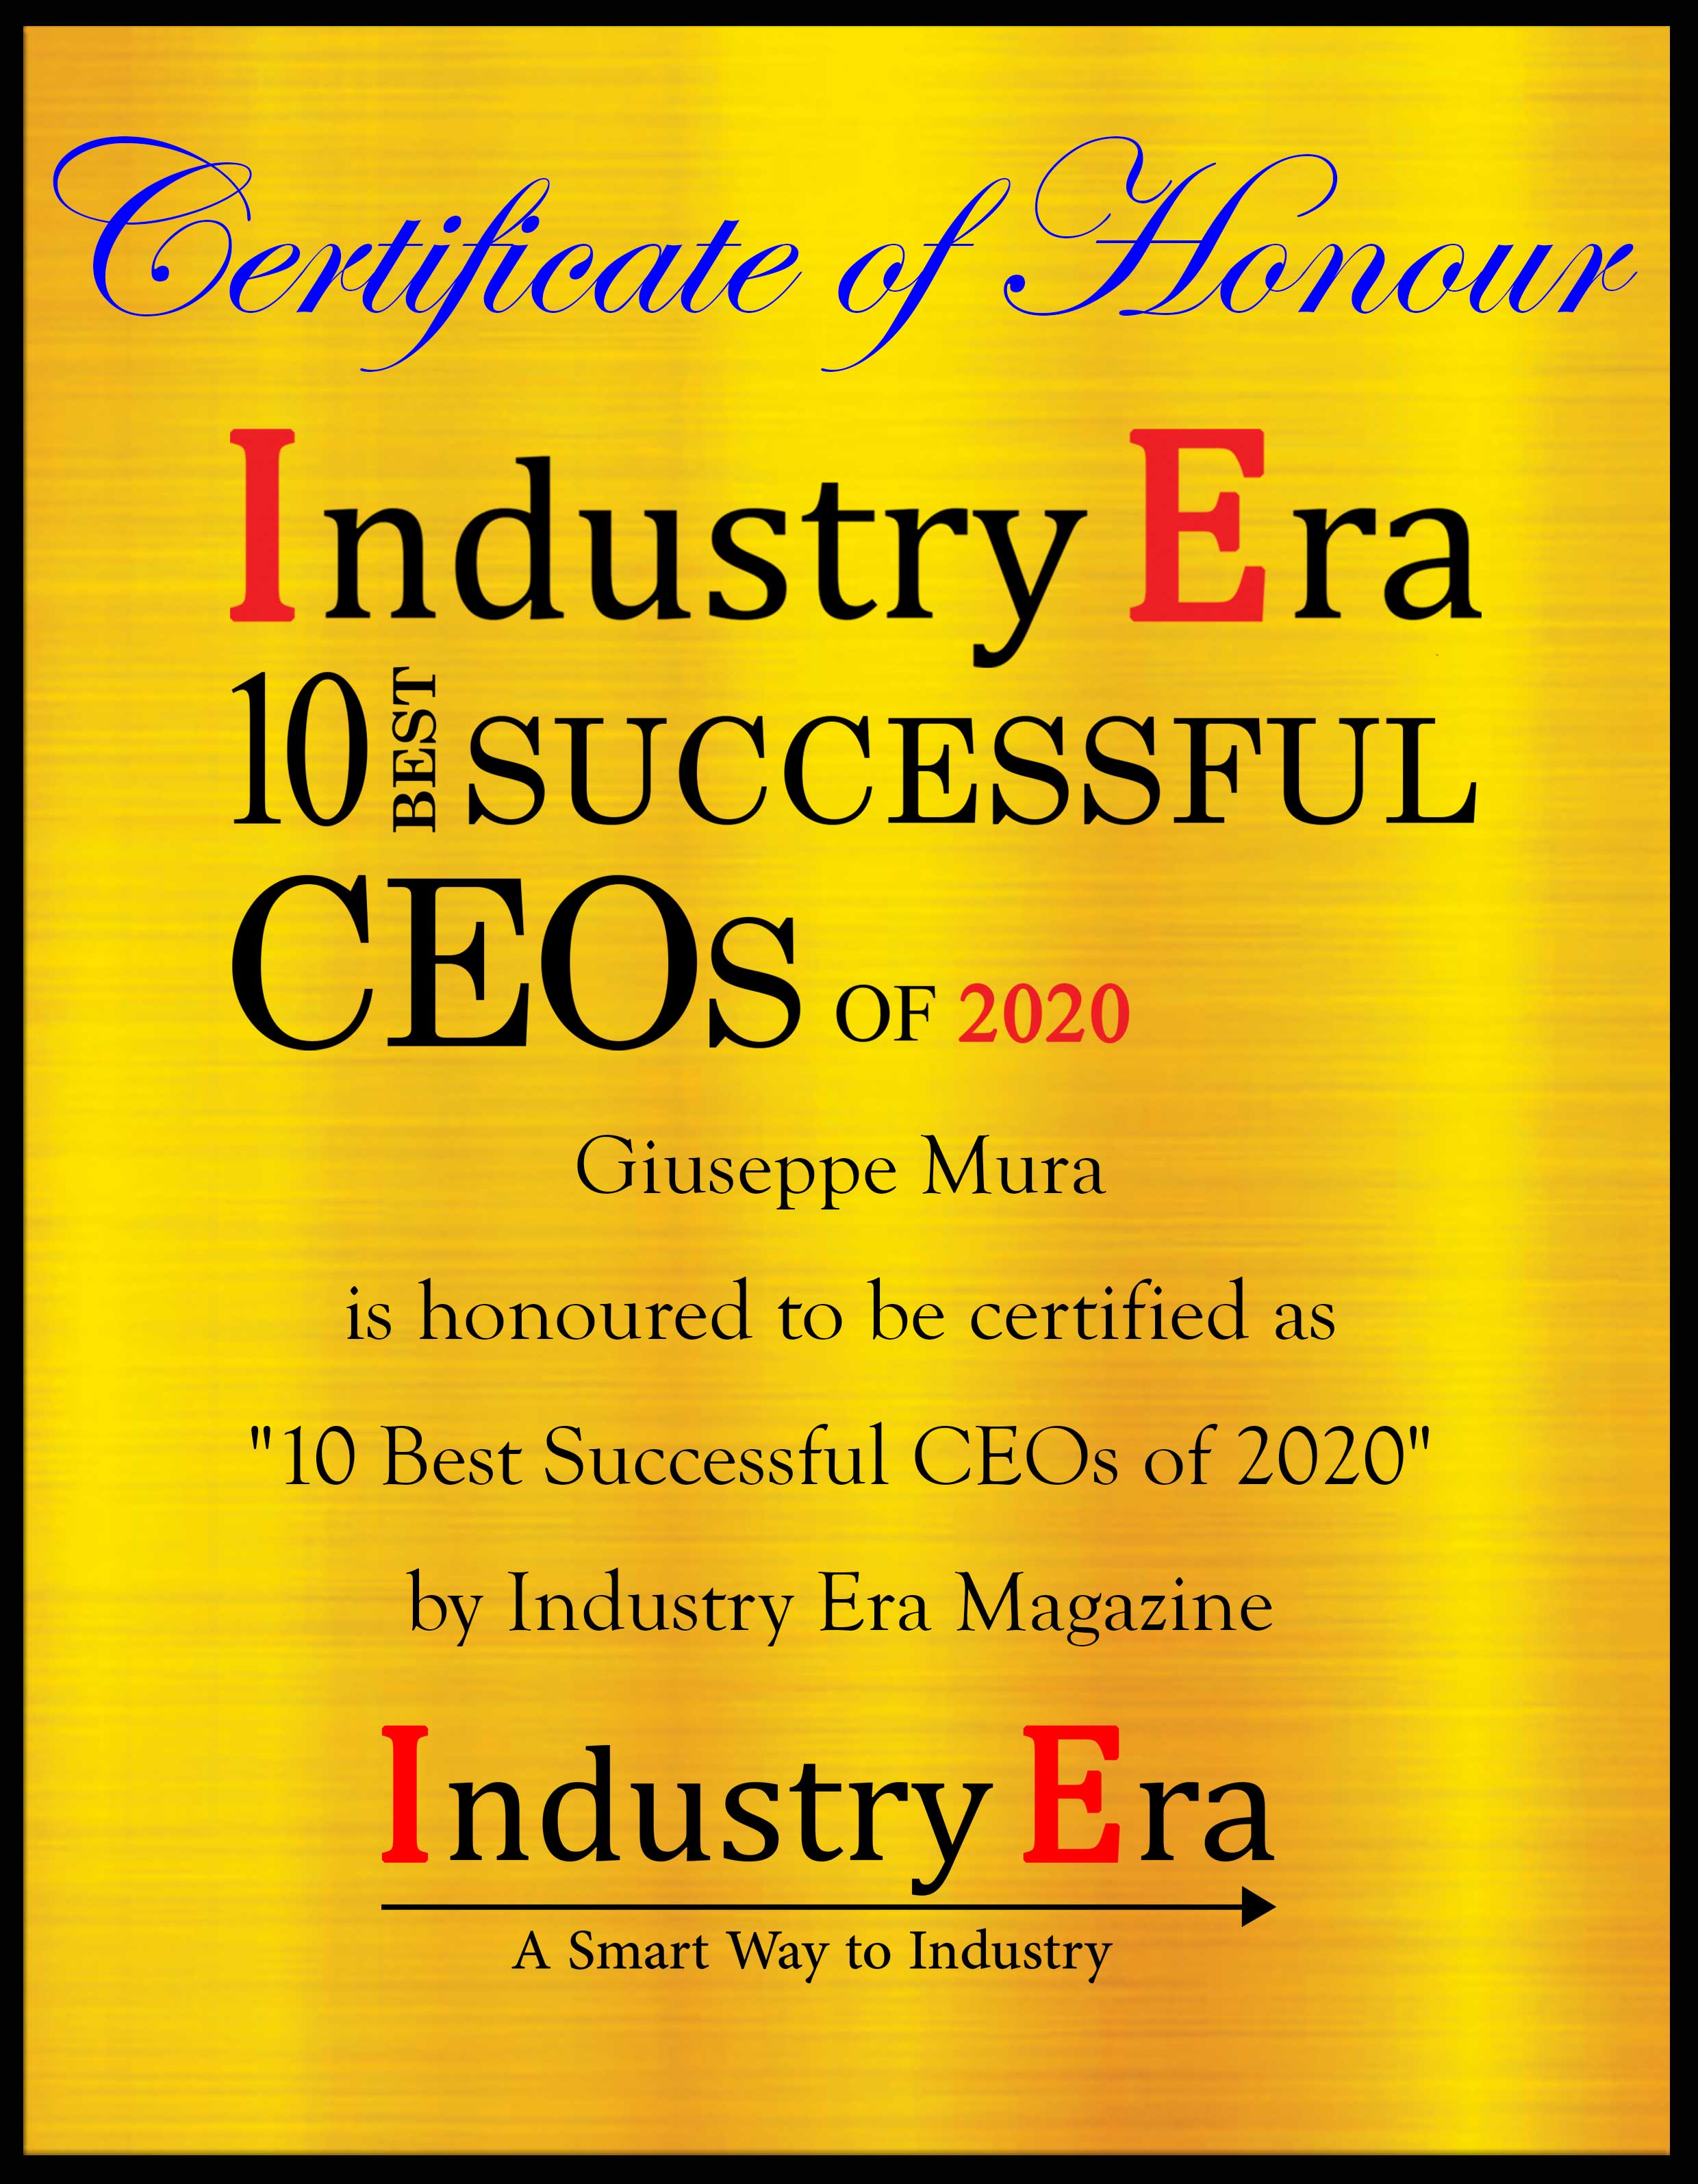 Giuseppe Mura CEO LUBEA Certificate